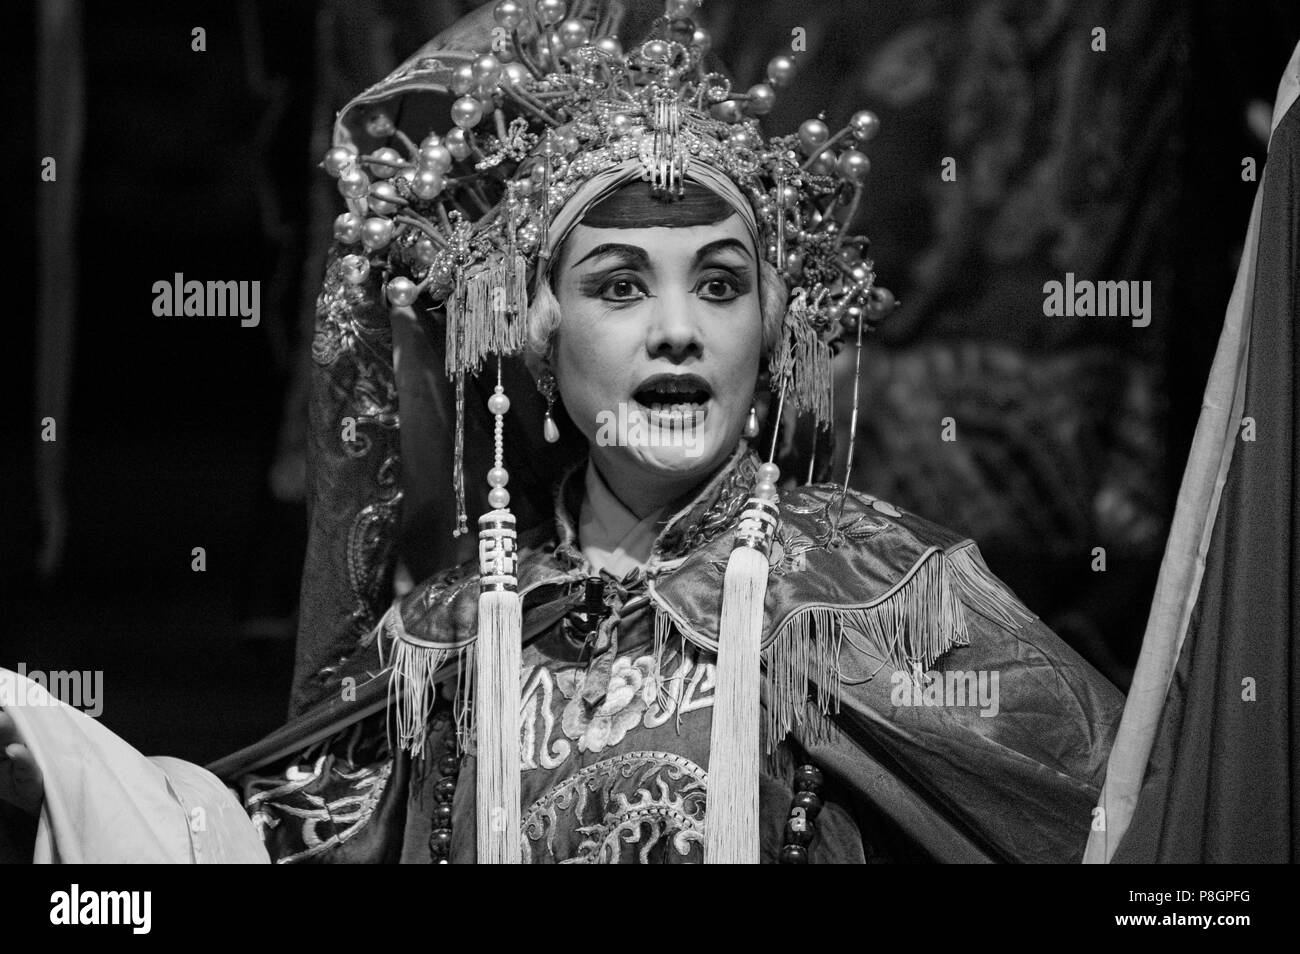 Costume complet star féminine dans les préformes à l'opéra chinois - Chengdu, province du Sichuan en Chine Banque D'Images